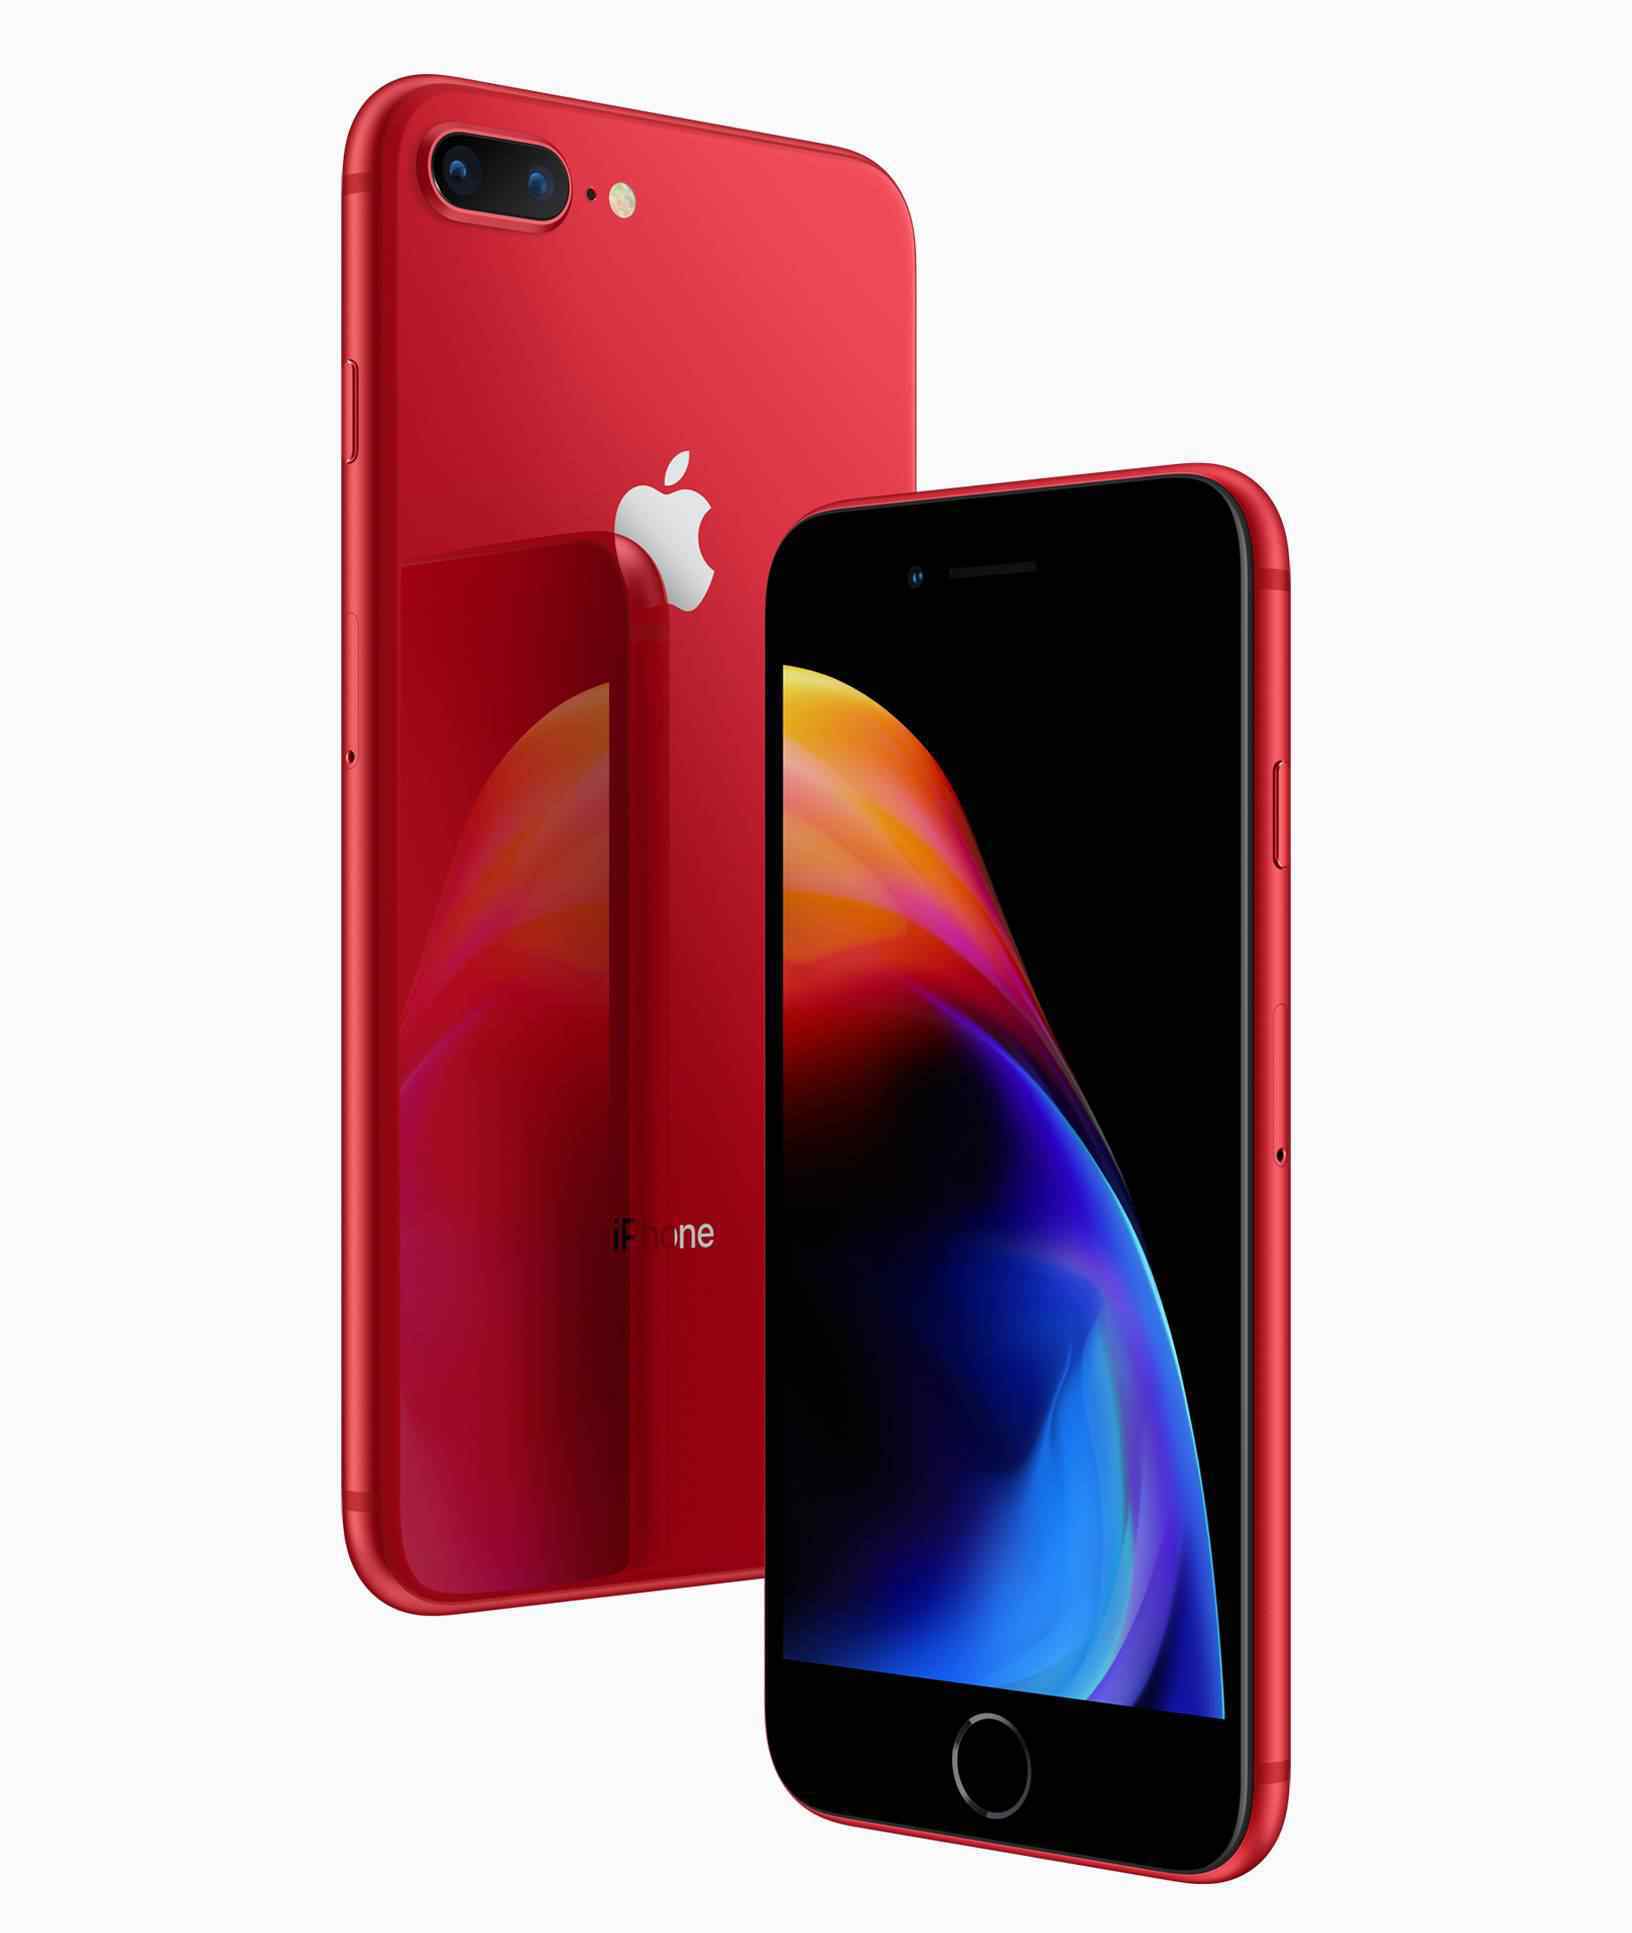 iphone红色 苹果发布红色iPhone 8特别版  iphone8红色限量版值得入手吗？